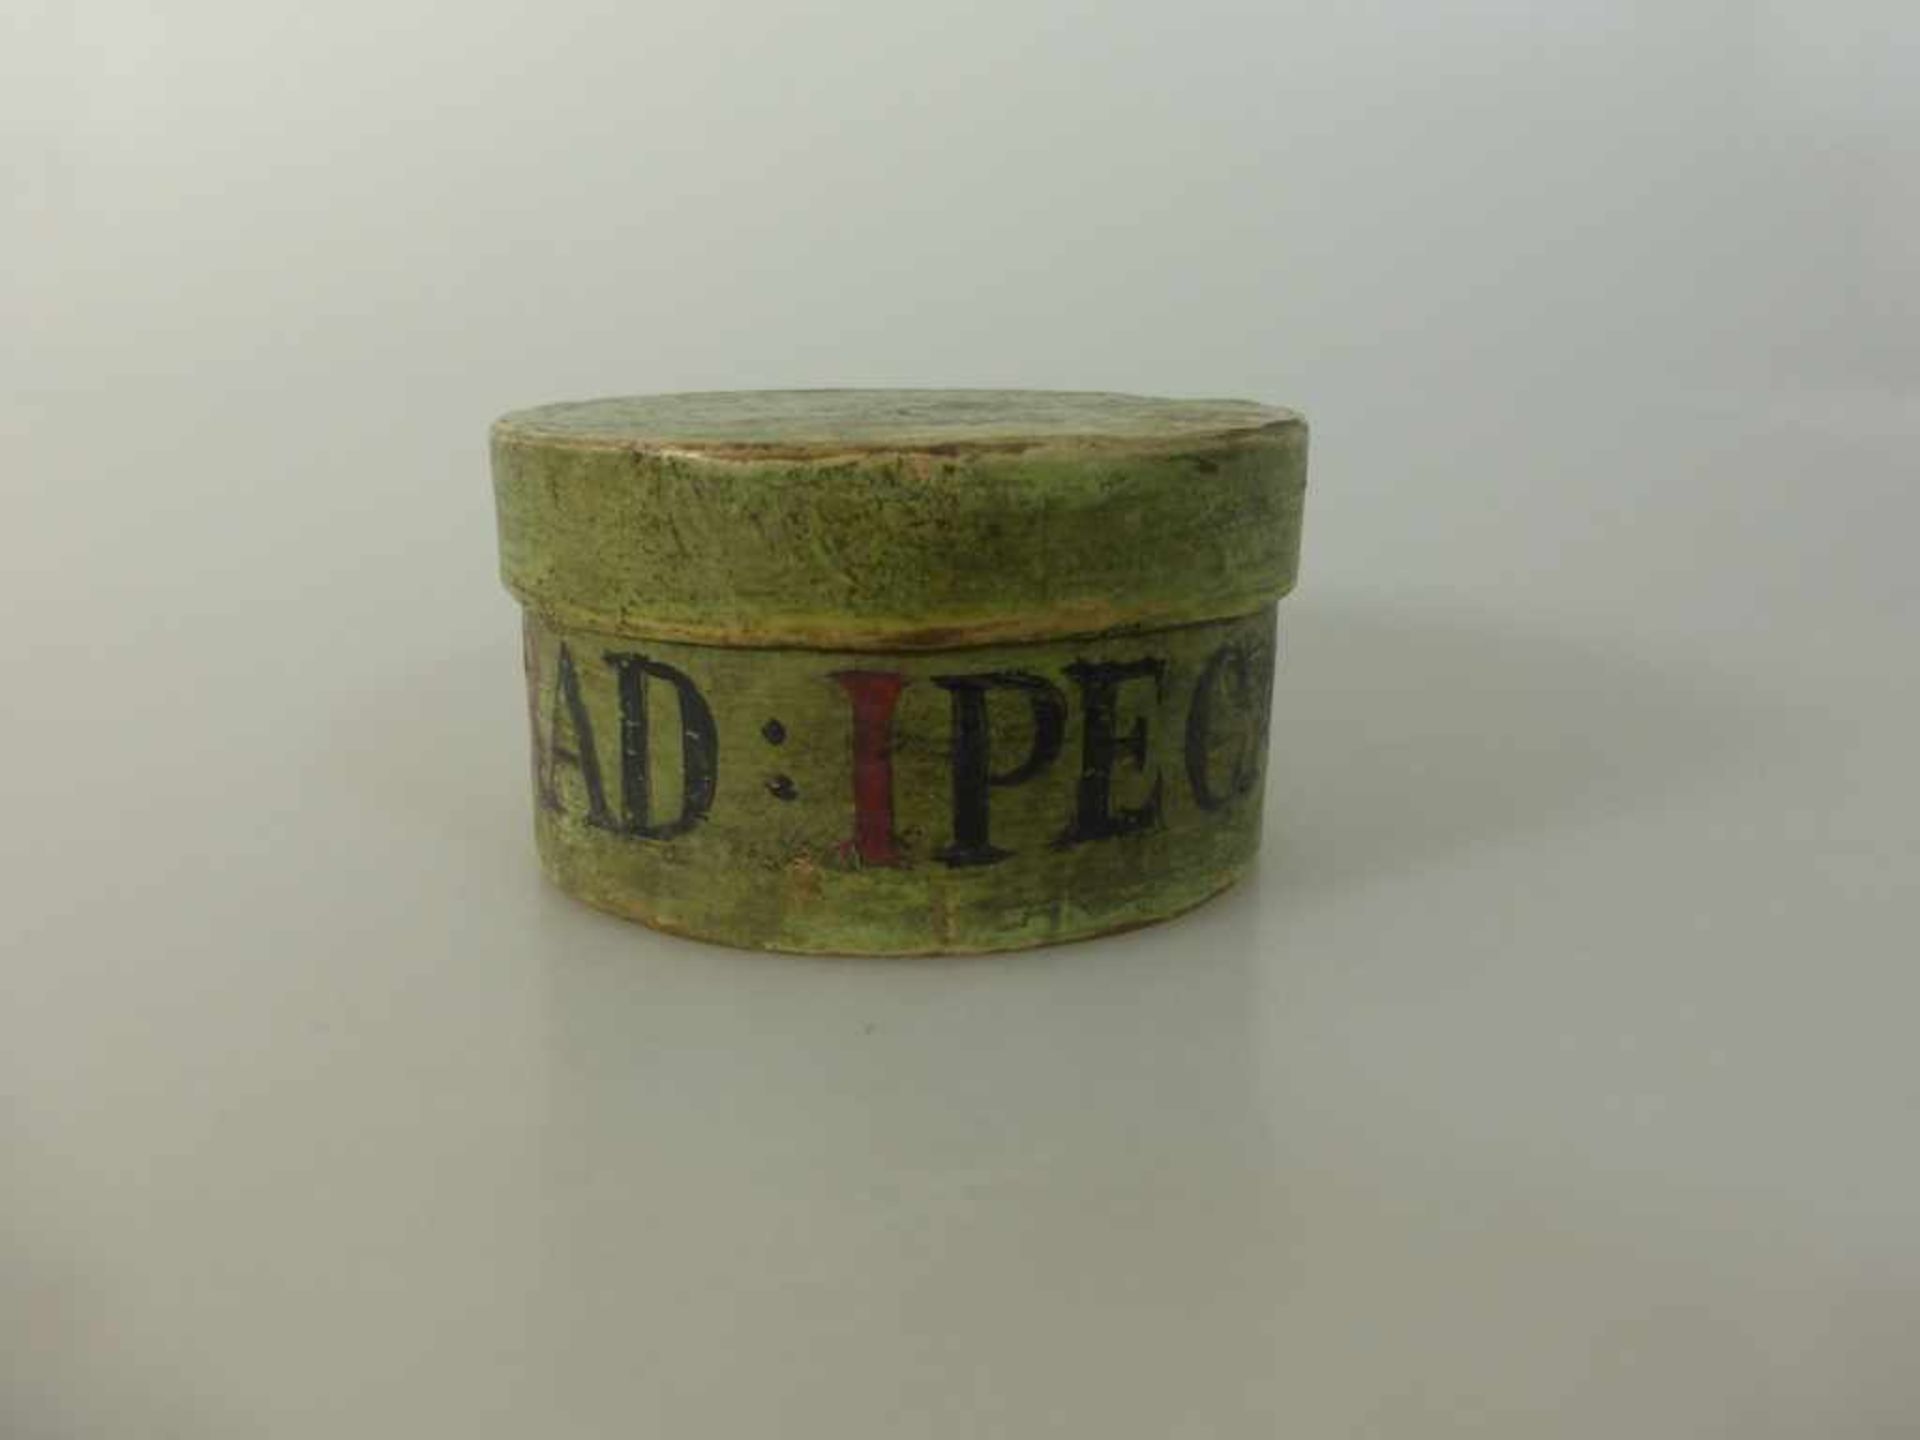 Apothekerdose um 1800, runde Spanschachtel beschriftet "RAD: IPECAC:" / Ipecacuanhawurzel oder